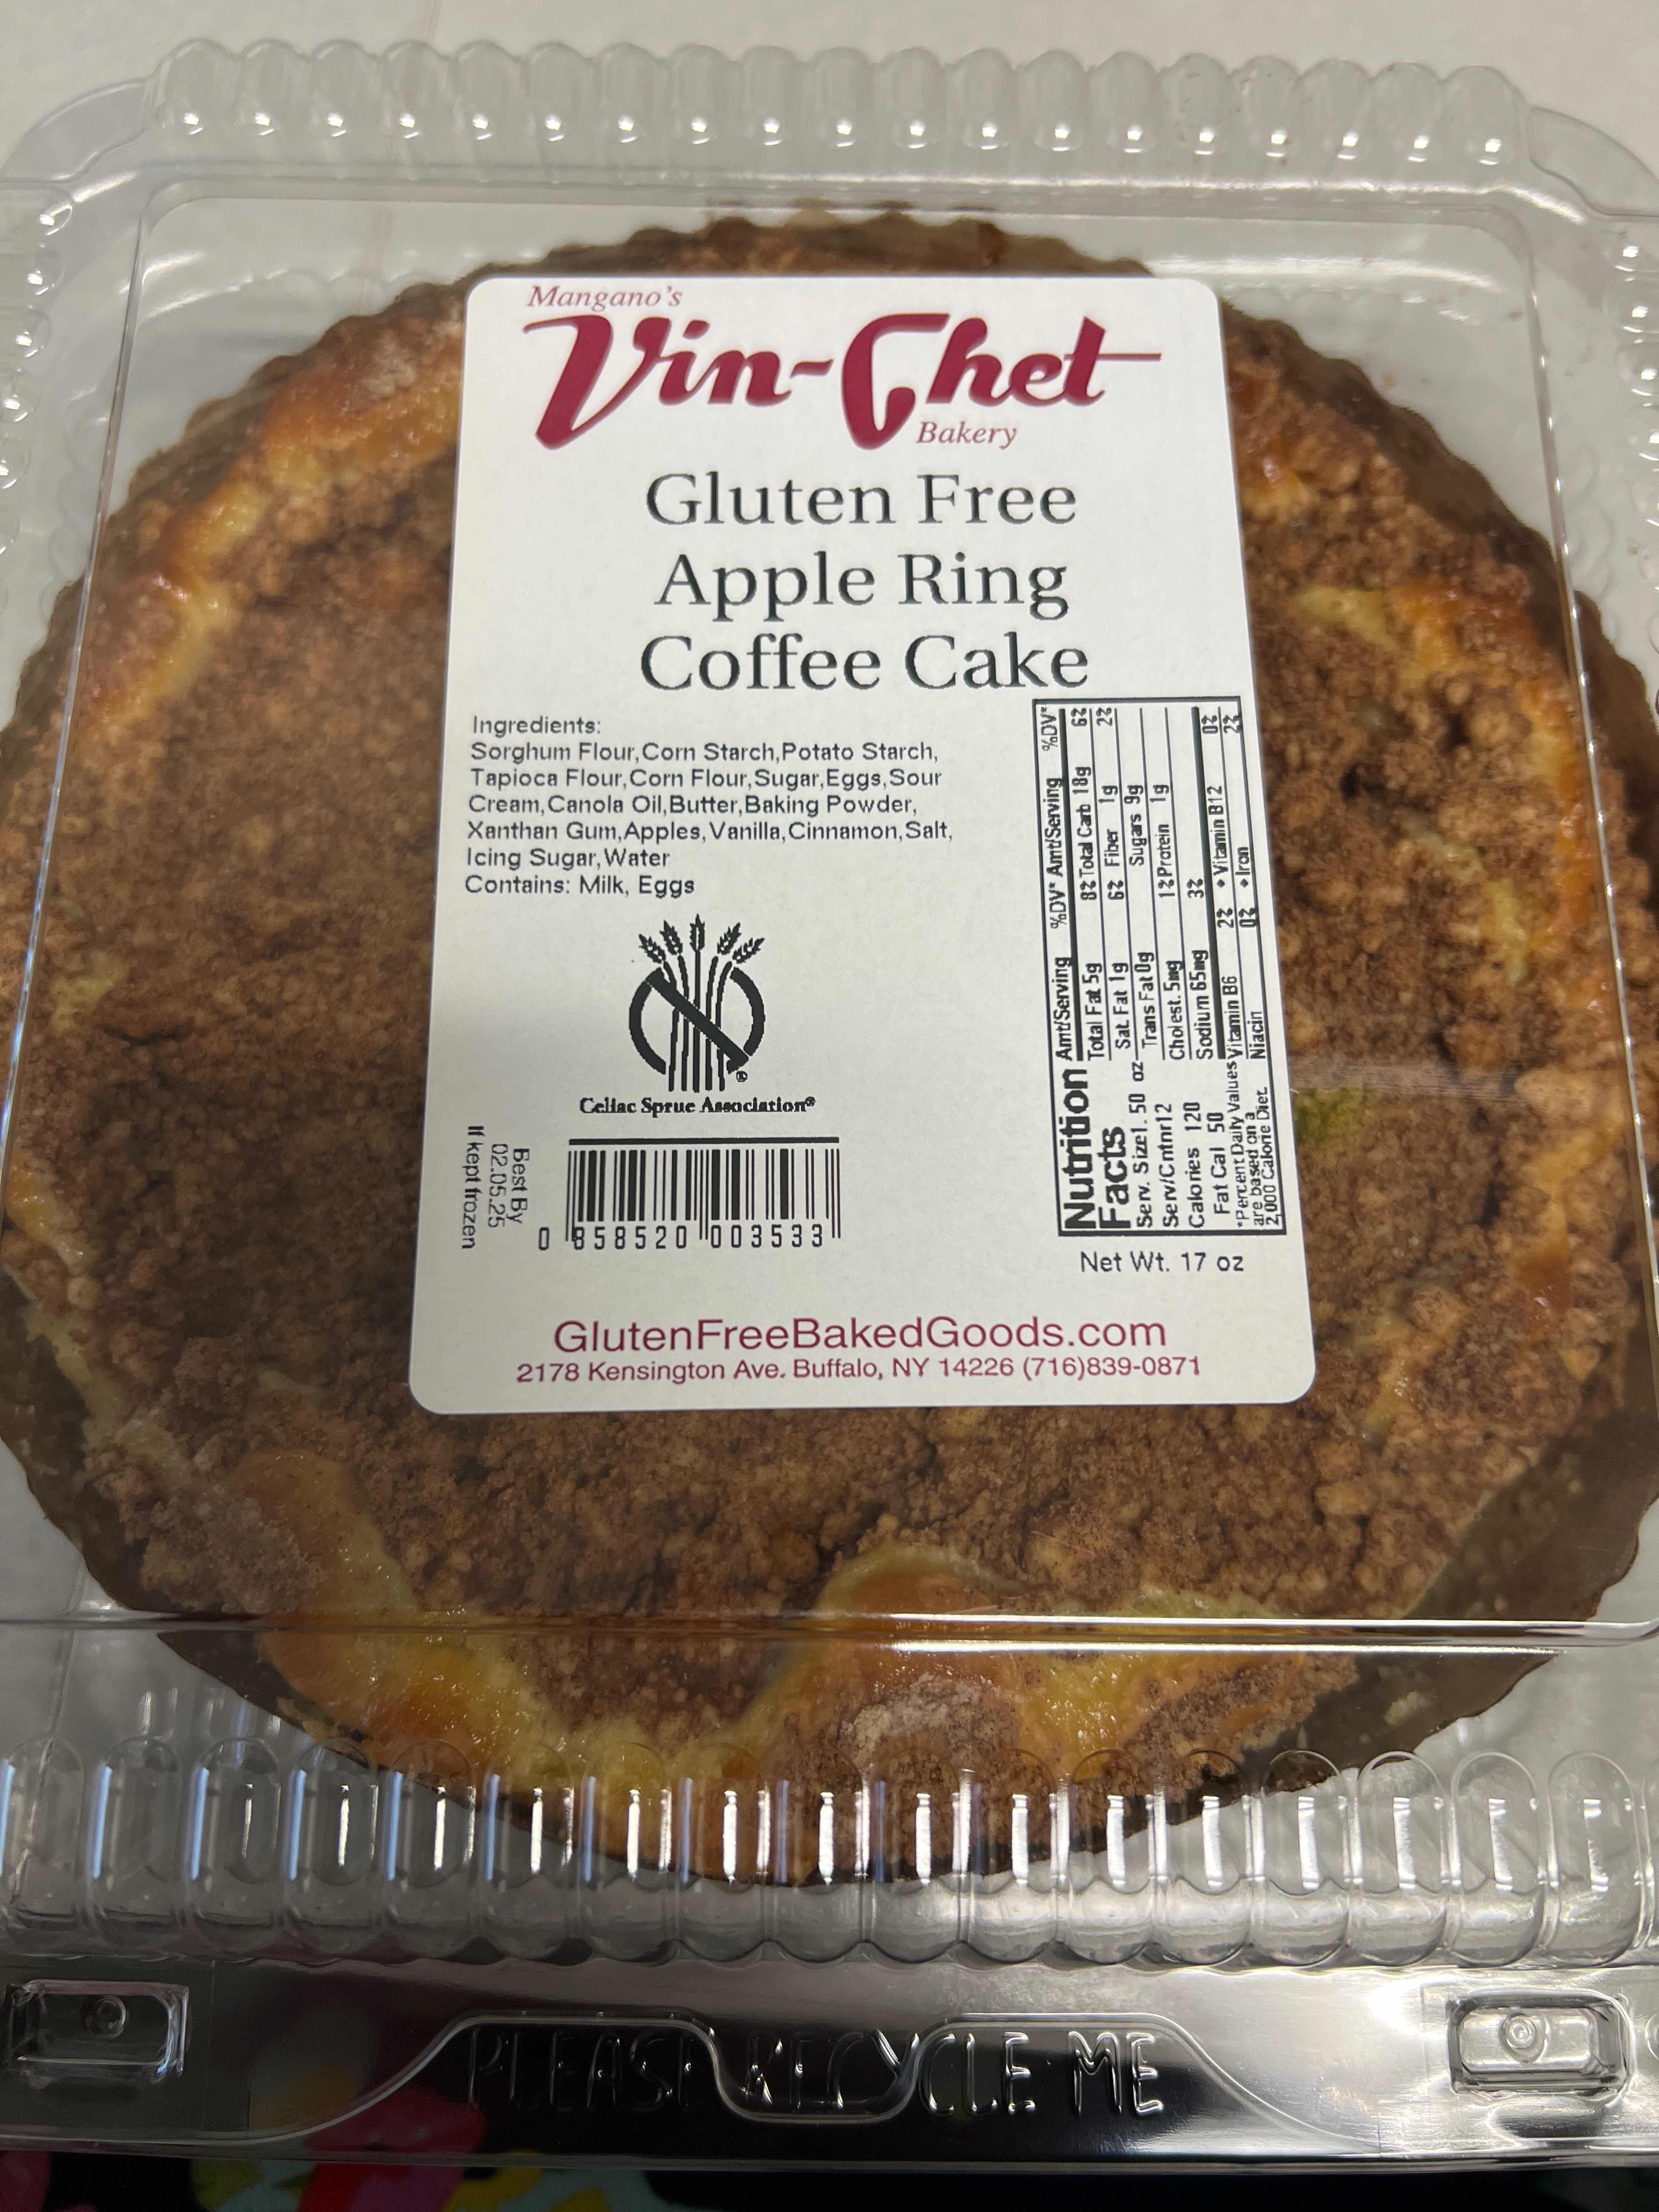 Vin-Chet Bakery, Fantastic Gluten Free Baked Goods!